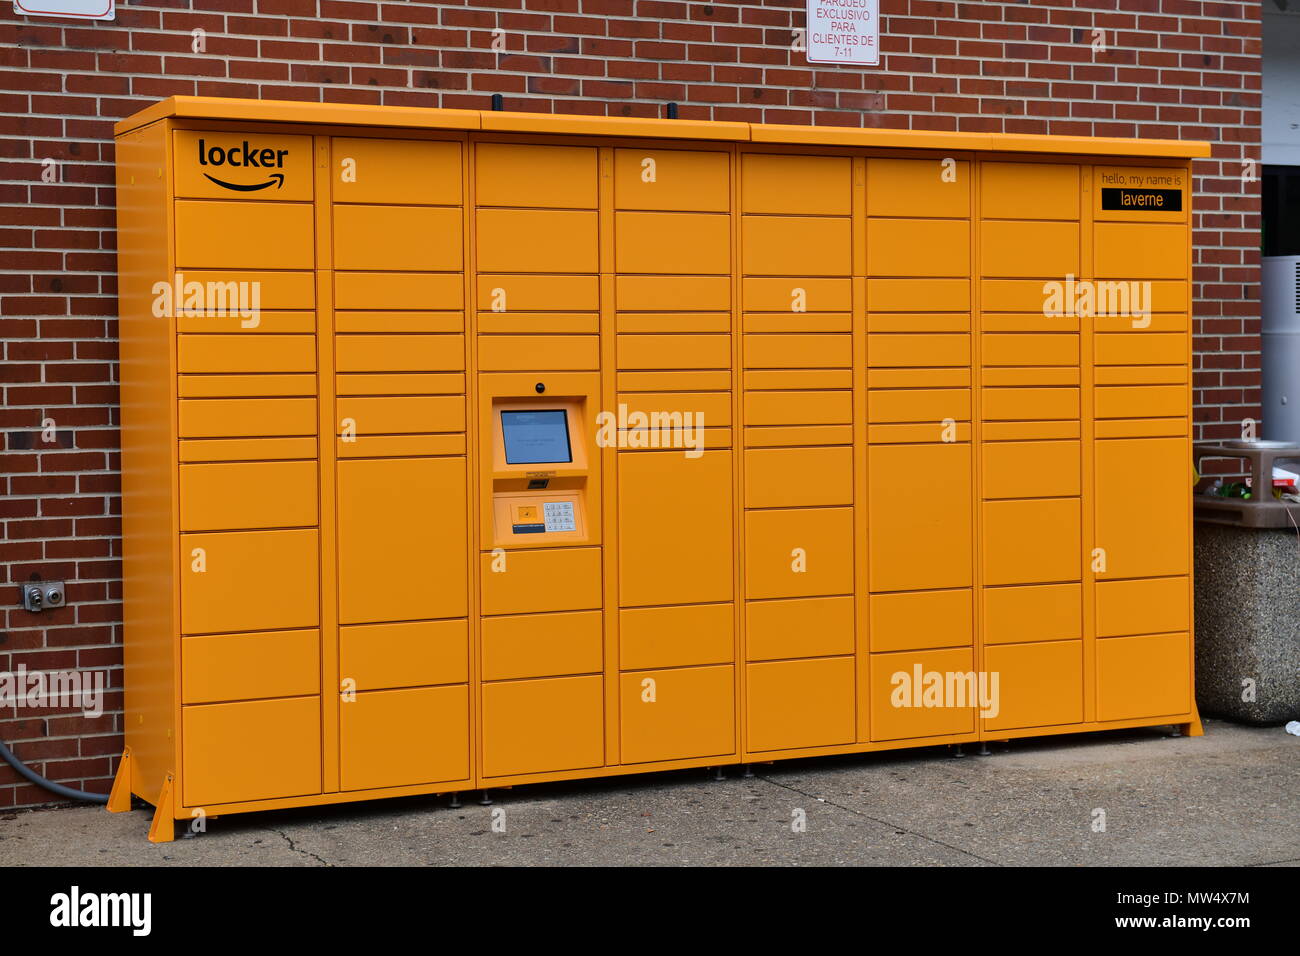 Amazon Schließfach ein sicheres System, Amazon an öffentlichen Plätzen für Abholung und Rücksendung von Paketen verwendet Stockfoto